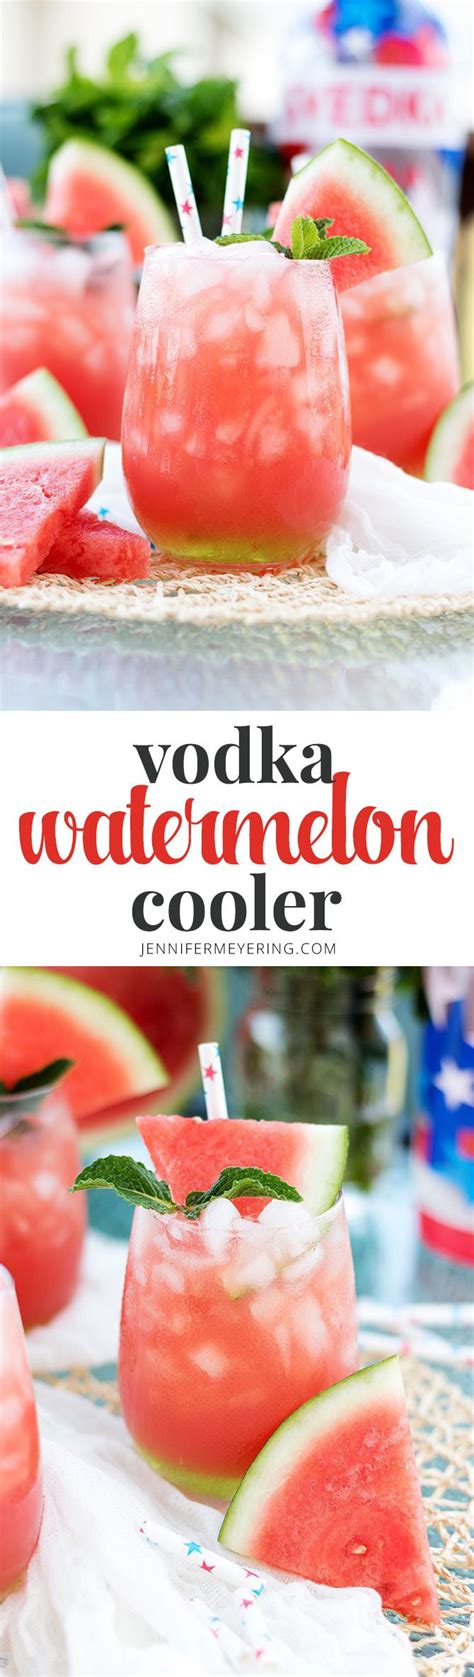 Vodka Watermelon Cooler Alcohol Recipes